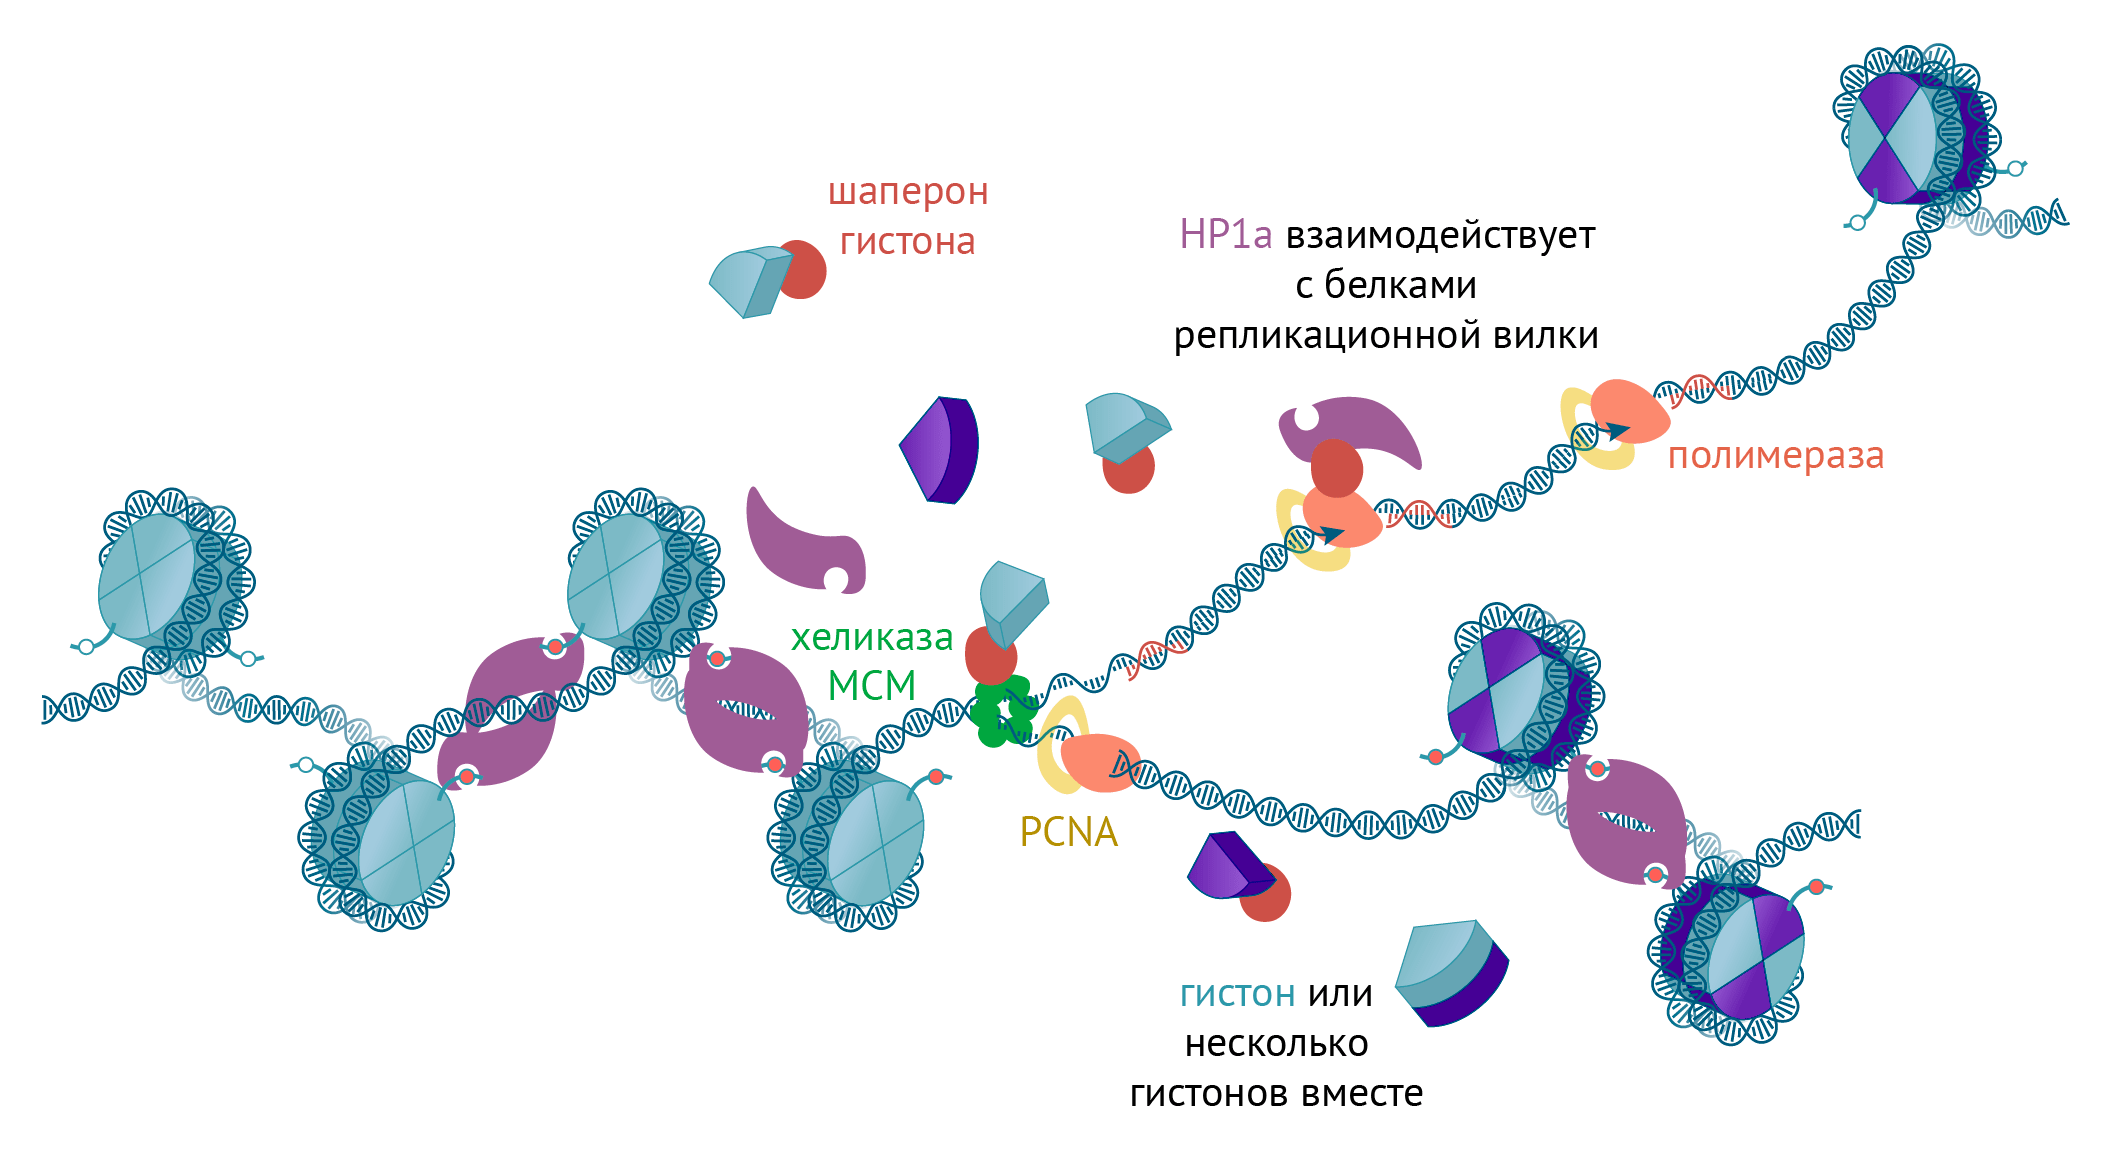 Наследование гистонов и негистоновых белков во время репликации